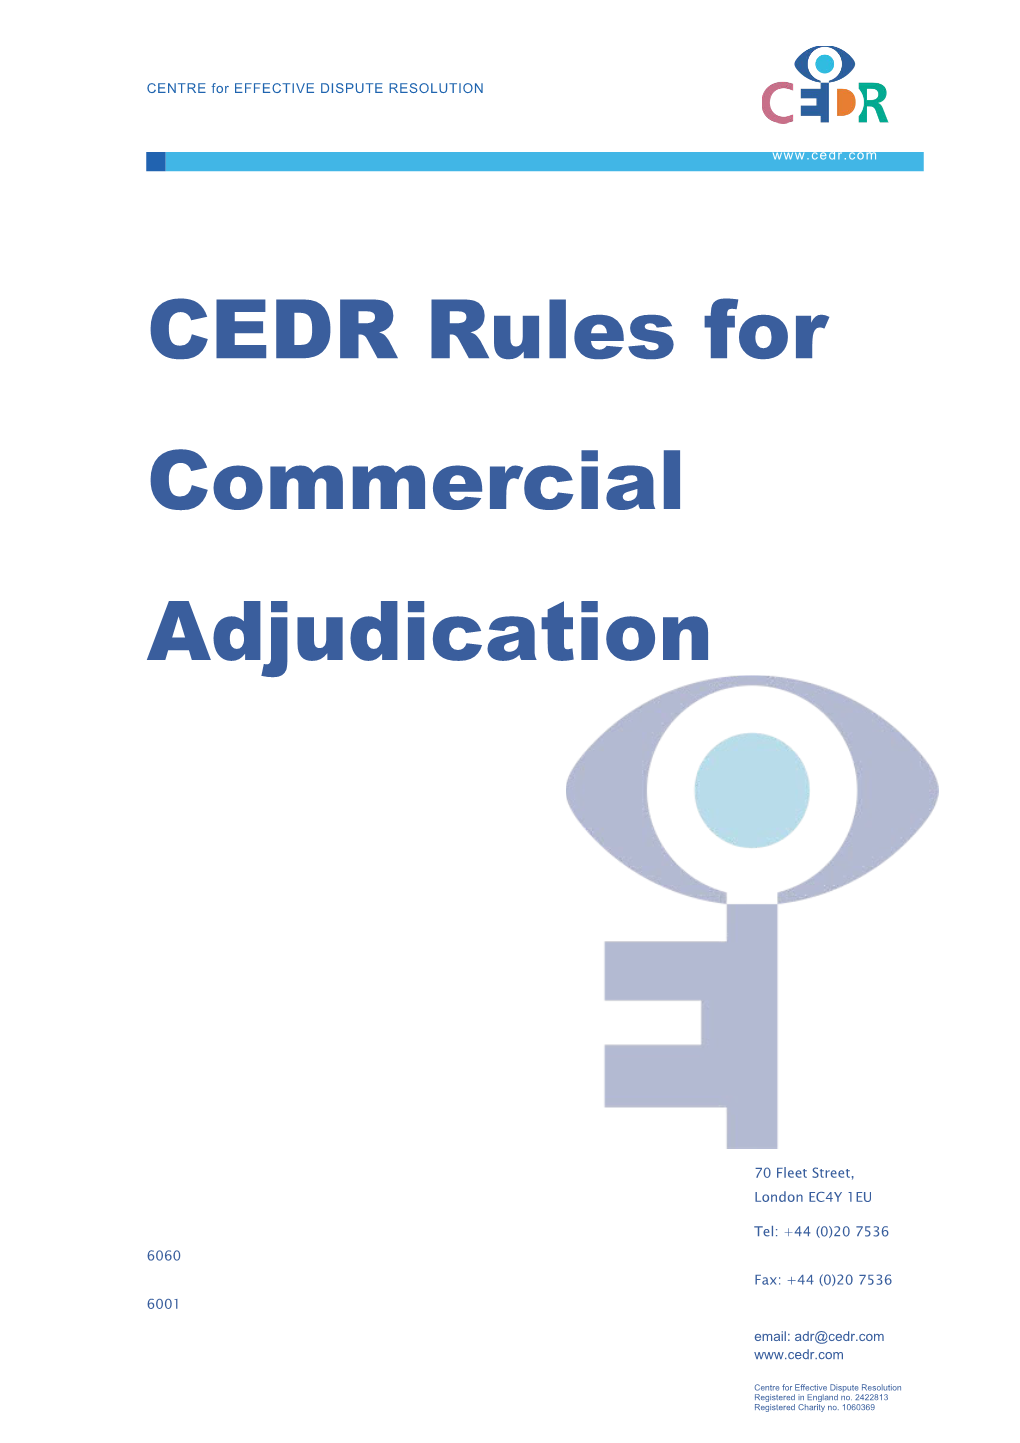 CEDR Rules for Commercial Adjudication